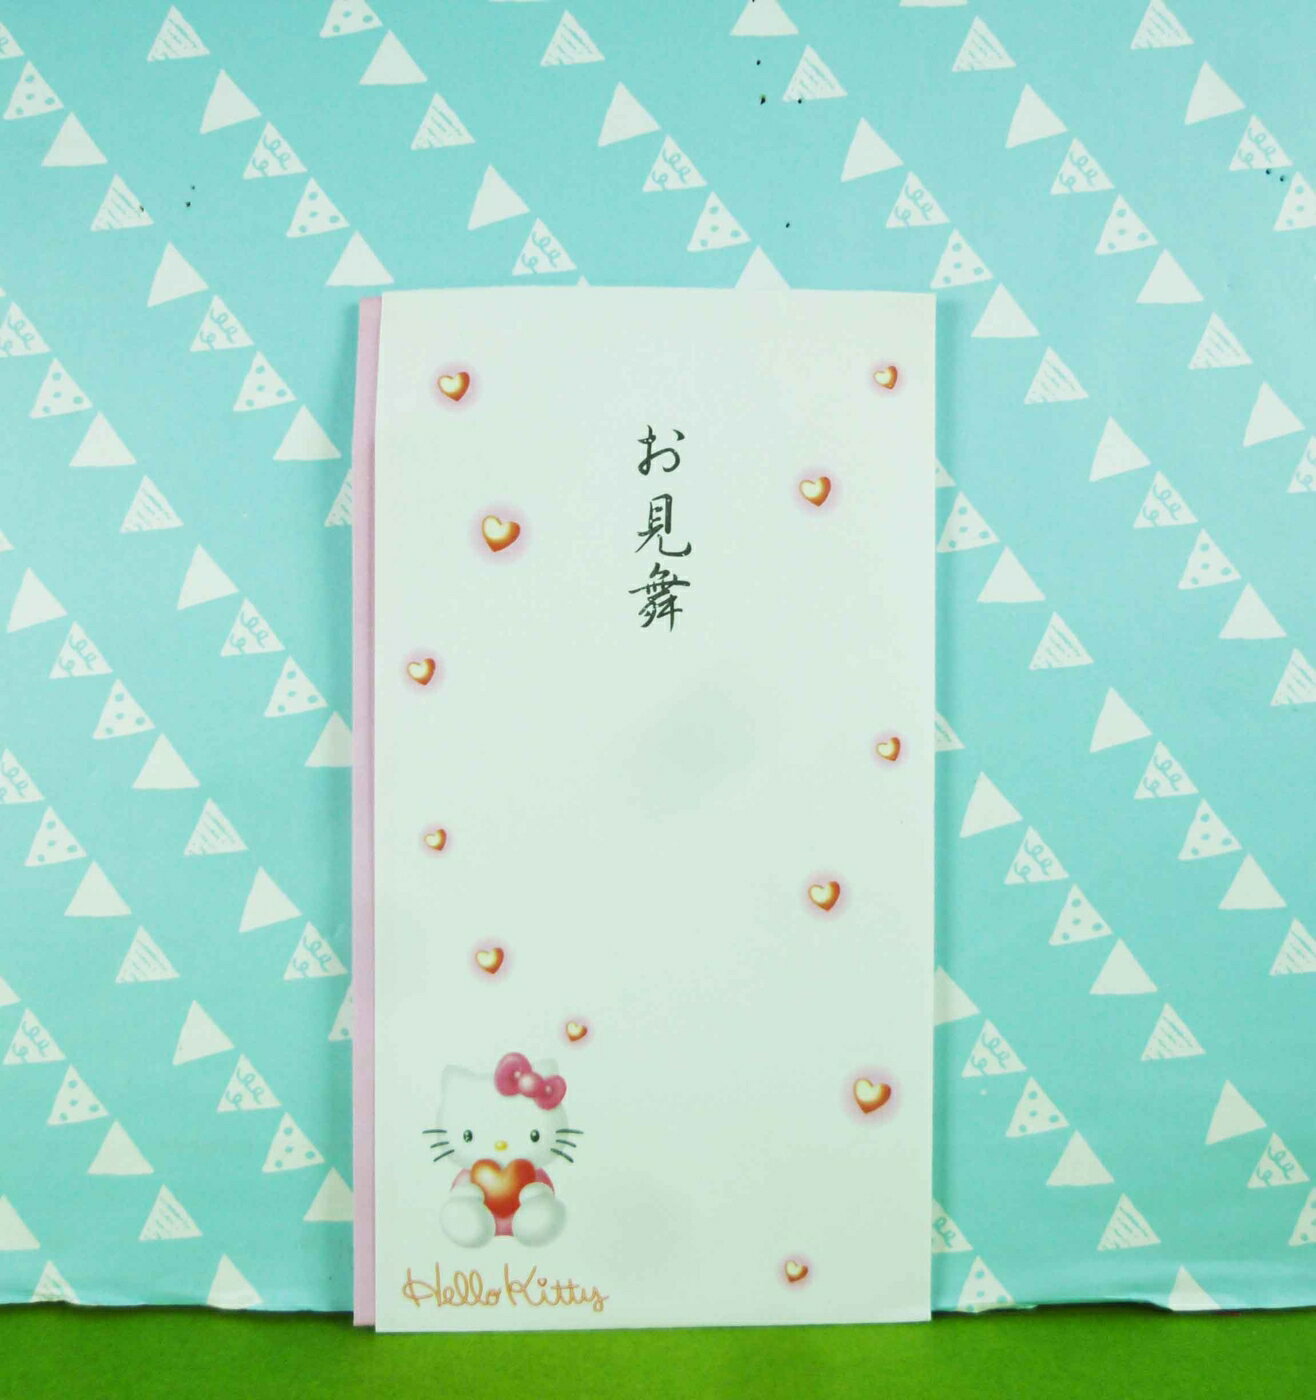 【震撼精品百貨】Hello Kitty 凱蒂貓 紅包袋 見舞【共1款】 震撼日式精品百貨